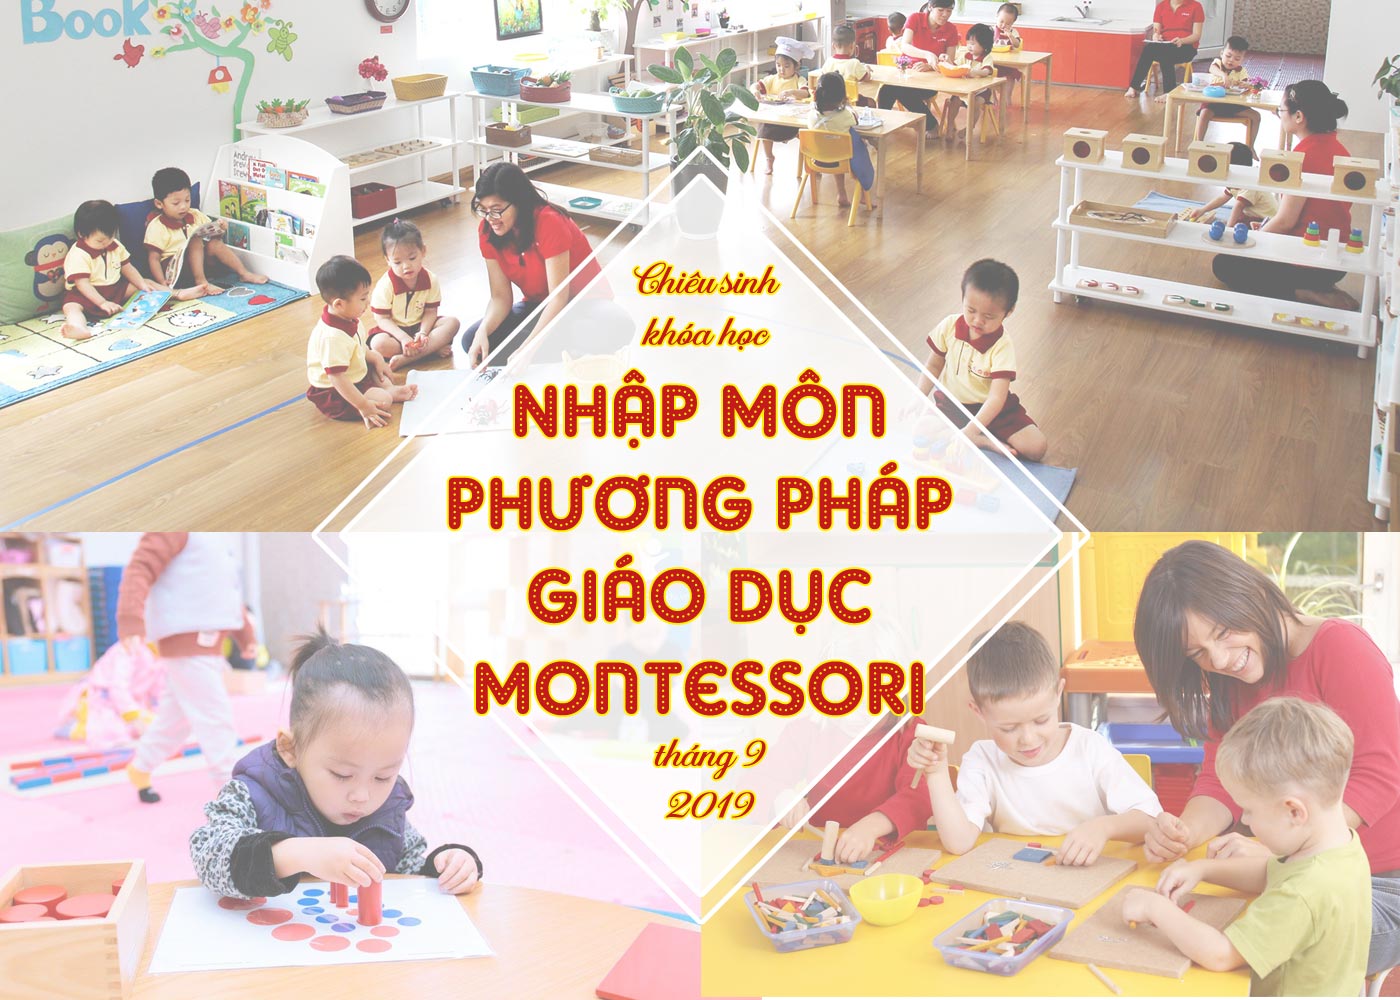 Chiêu sinh khóa học nhập môn PP giáo dục Montessori tháng 9-2019 - Ảnh 1